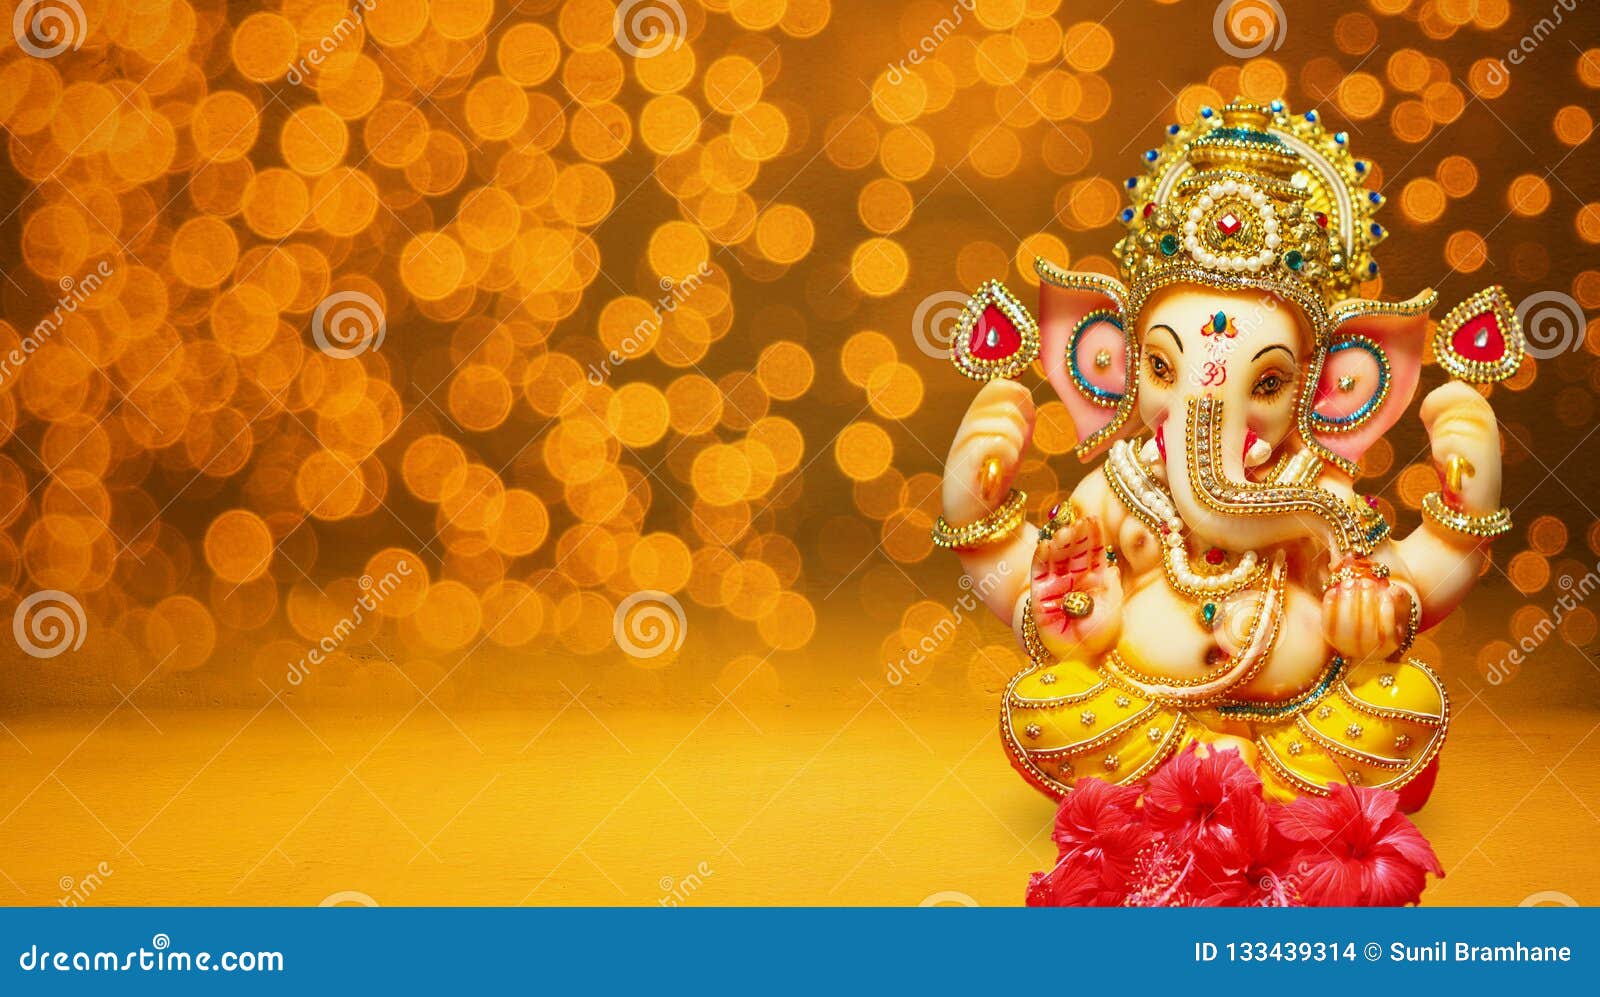 Lord Ganesha Idol Ganesh Festival Chaturthi Stock Illustration -  Illustration of india, hinduism: 133439314